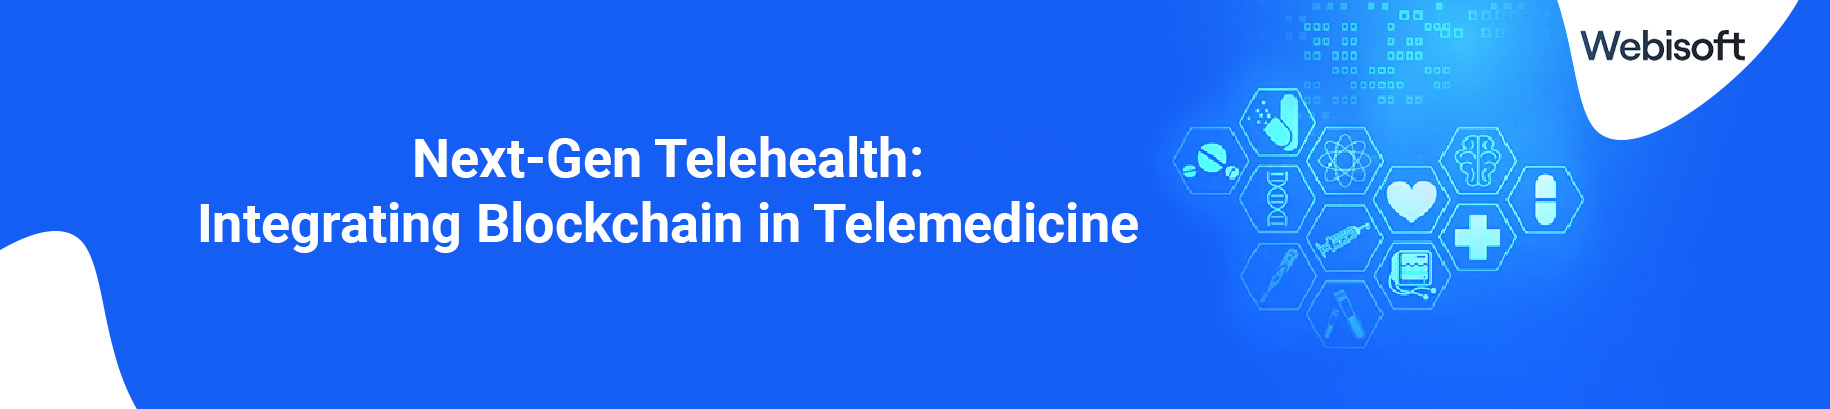 blockchain in telemedicine